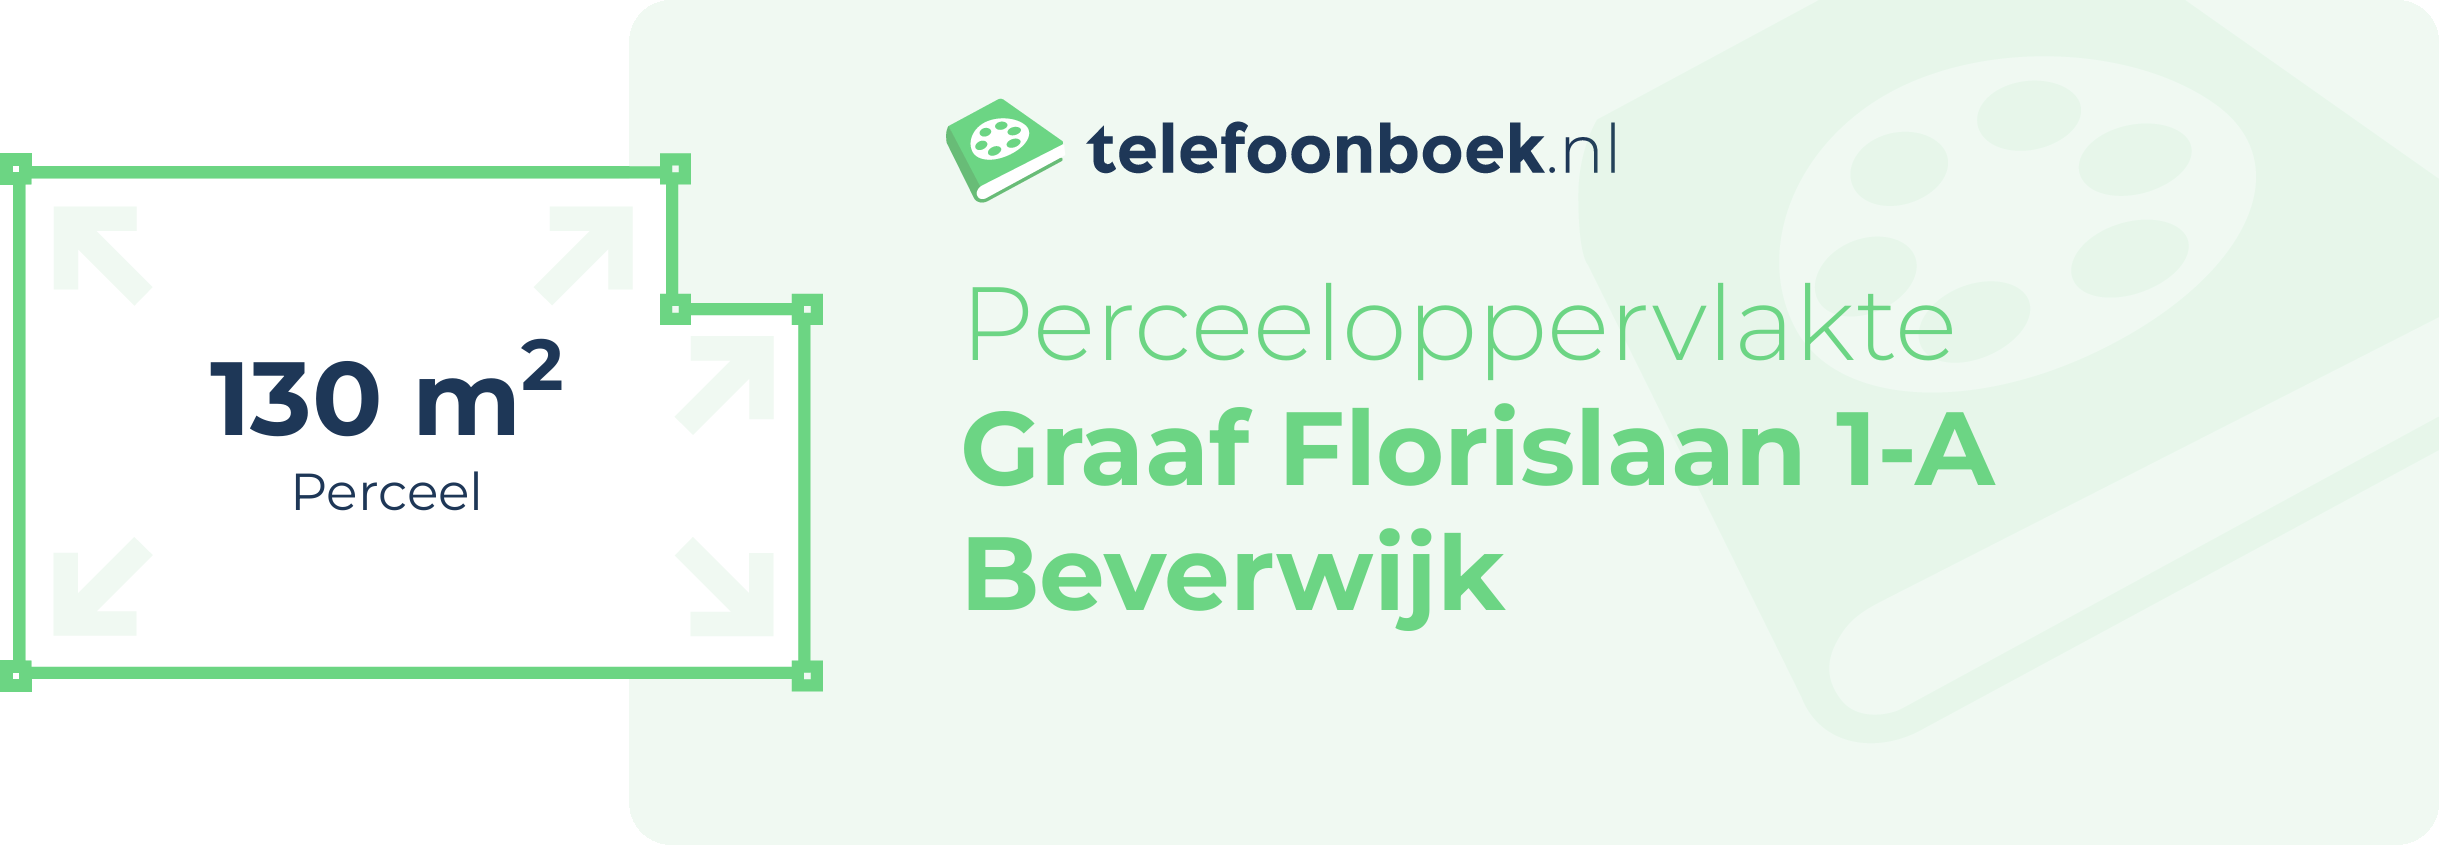 Perceeloppervlakte Graaf Florislaan 1-A Beverwijk